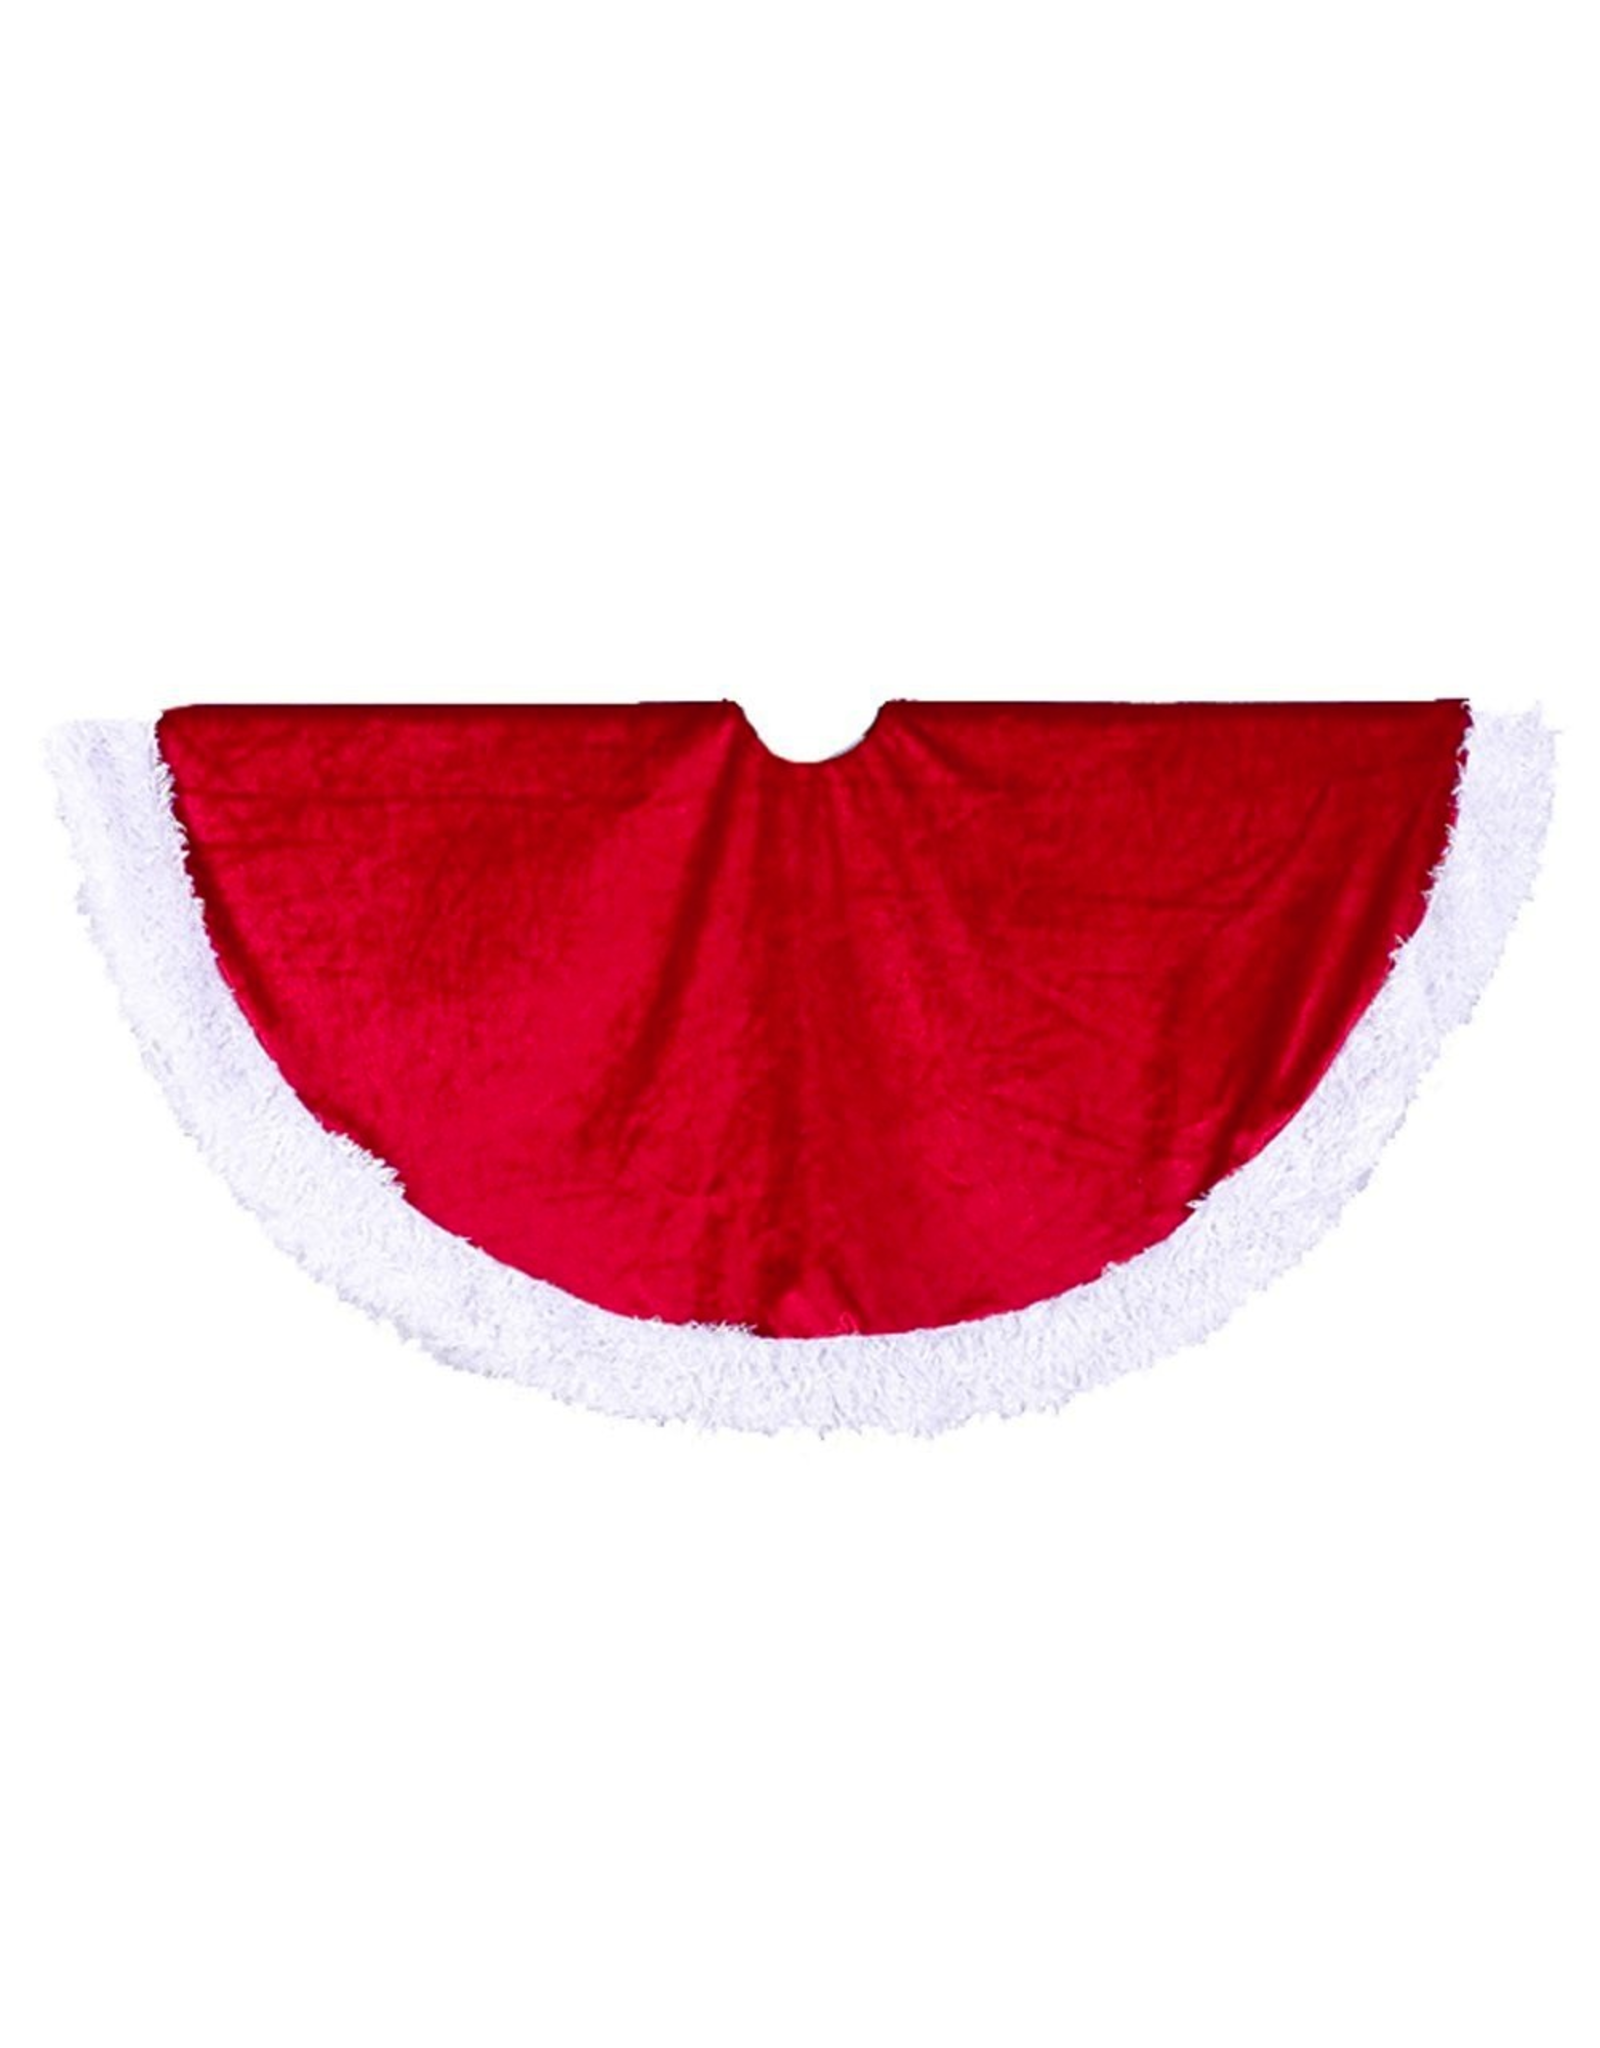 Kurt Adler Christmas Tree Skirt Red Velvet w White Fur Trim Tree Skirt 48D